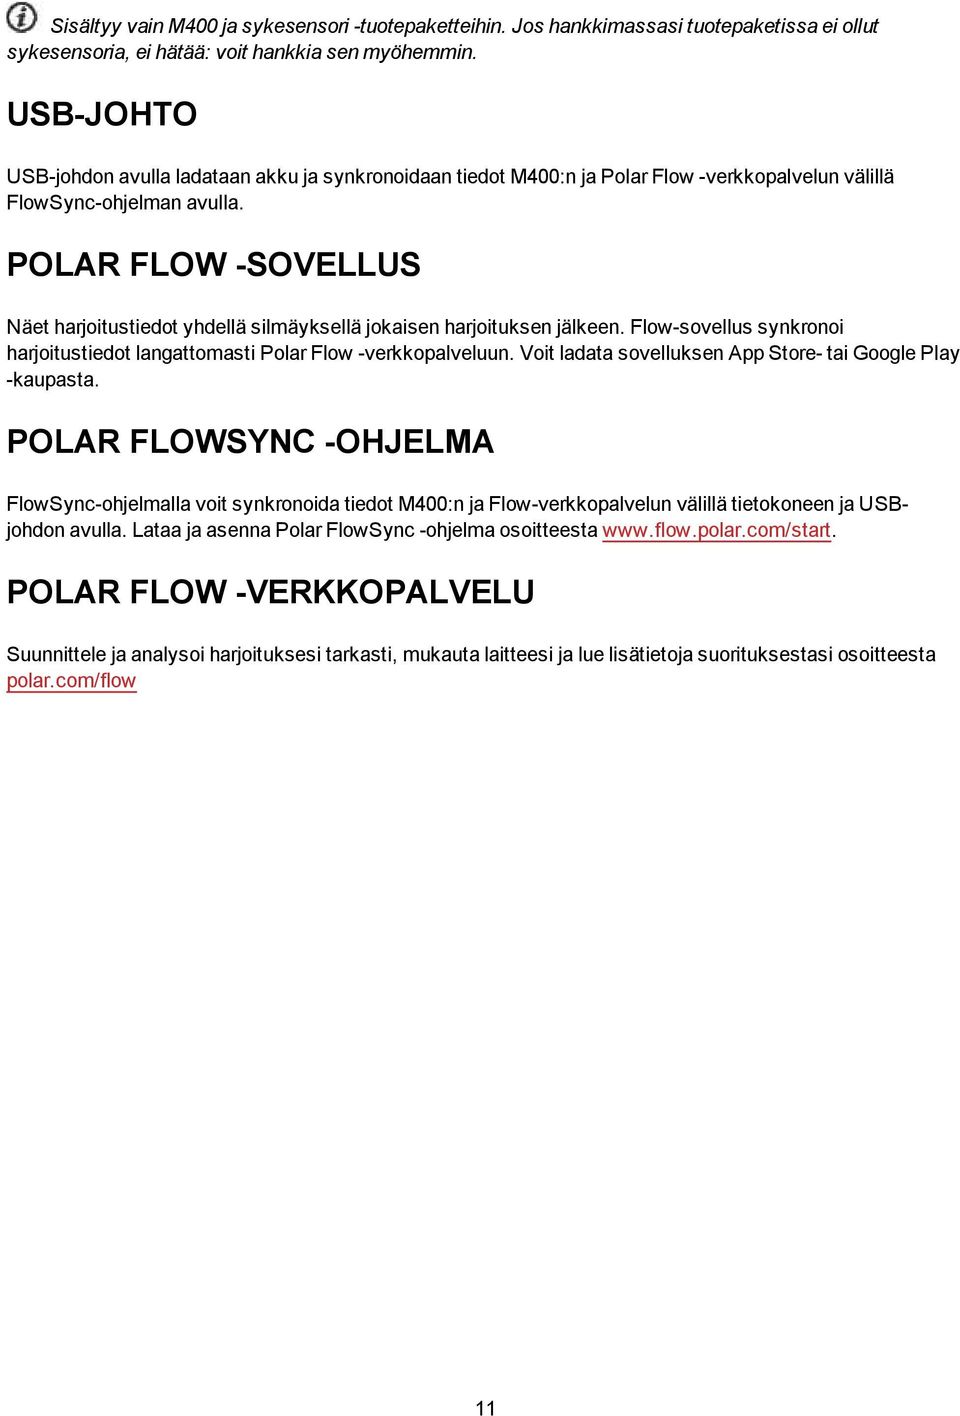 POLAR FLOW -SOVELLUS Näet harjoitustiedot yhdellä silmäyksellä jokaisen harjoituksen jälkeen. Flow-sovellus synkronoi harjoitustiedot langattomasti Polar Flow -verkkopalveluun.